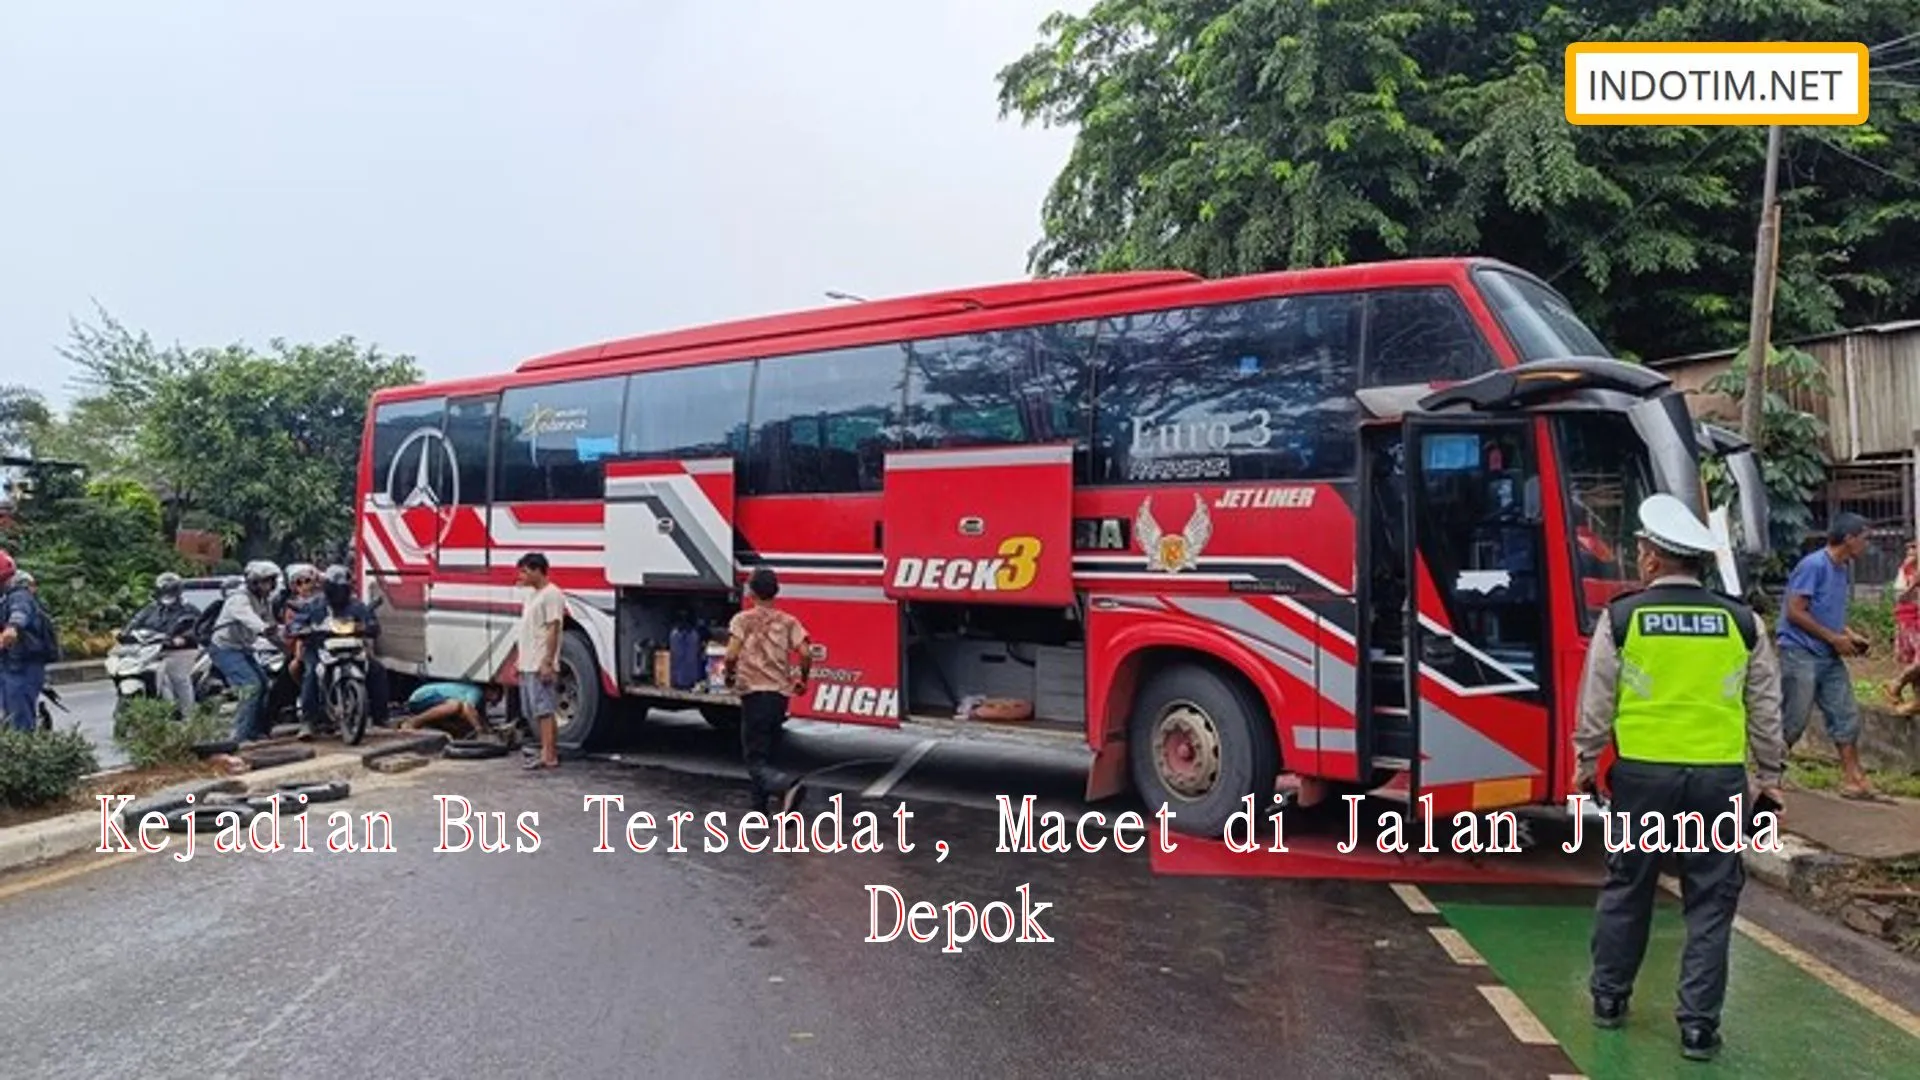 Kejadian Bus Tersendat, Macet di Jalan Juanda Depok